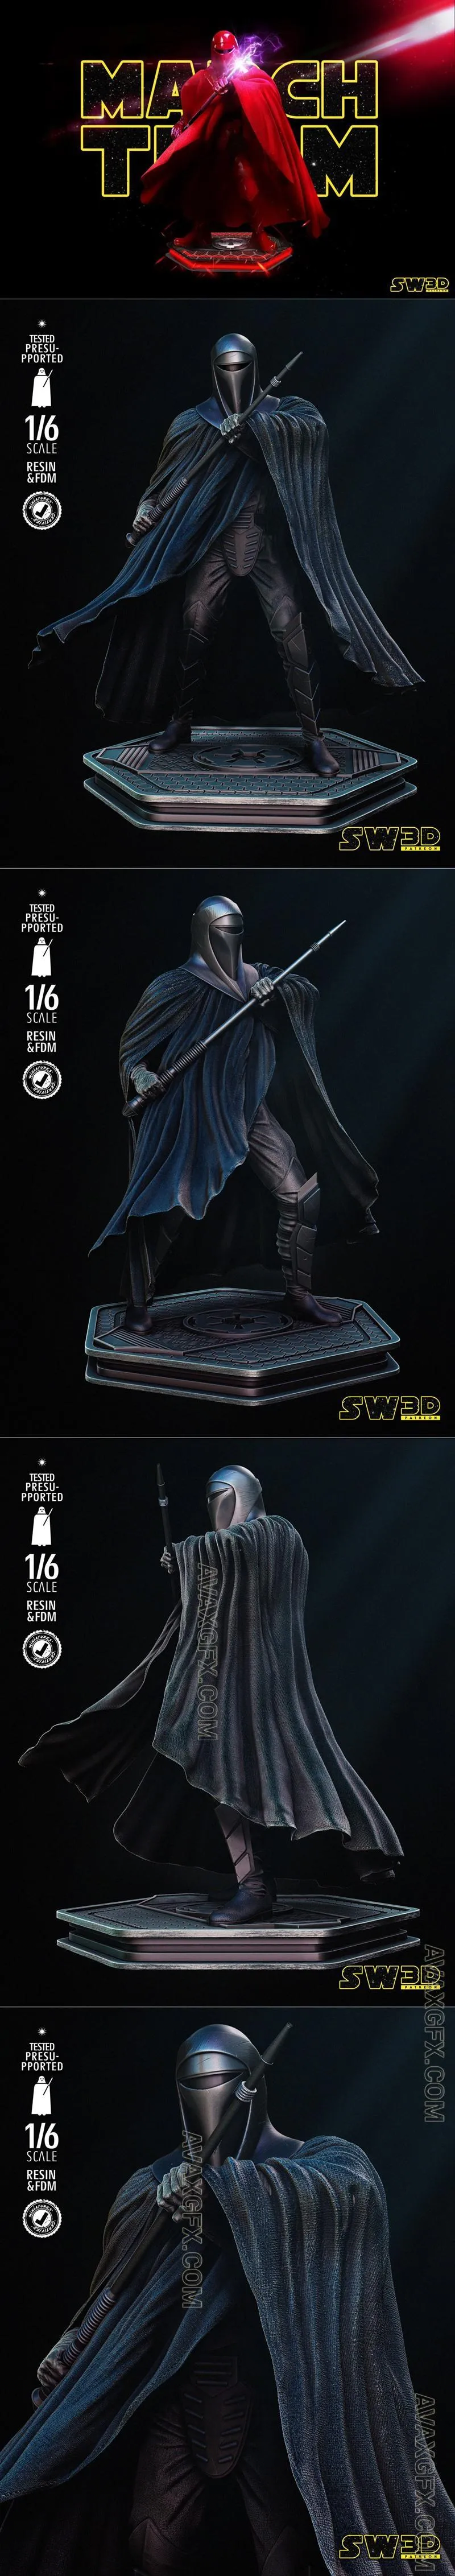 Star Wars - Emperor Royal Guards Sculpture - STL 3D Model